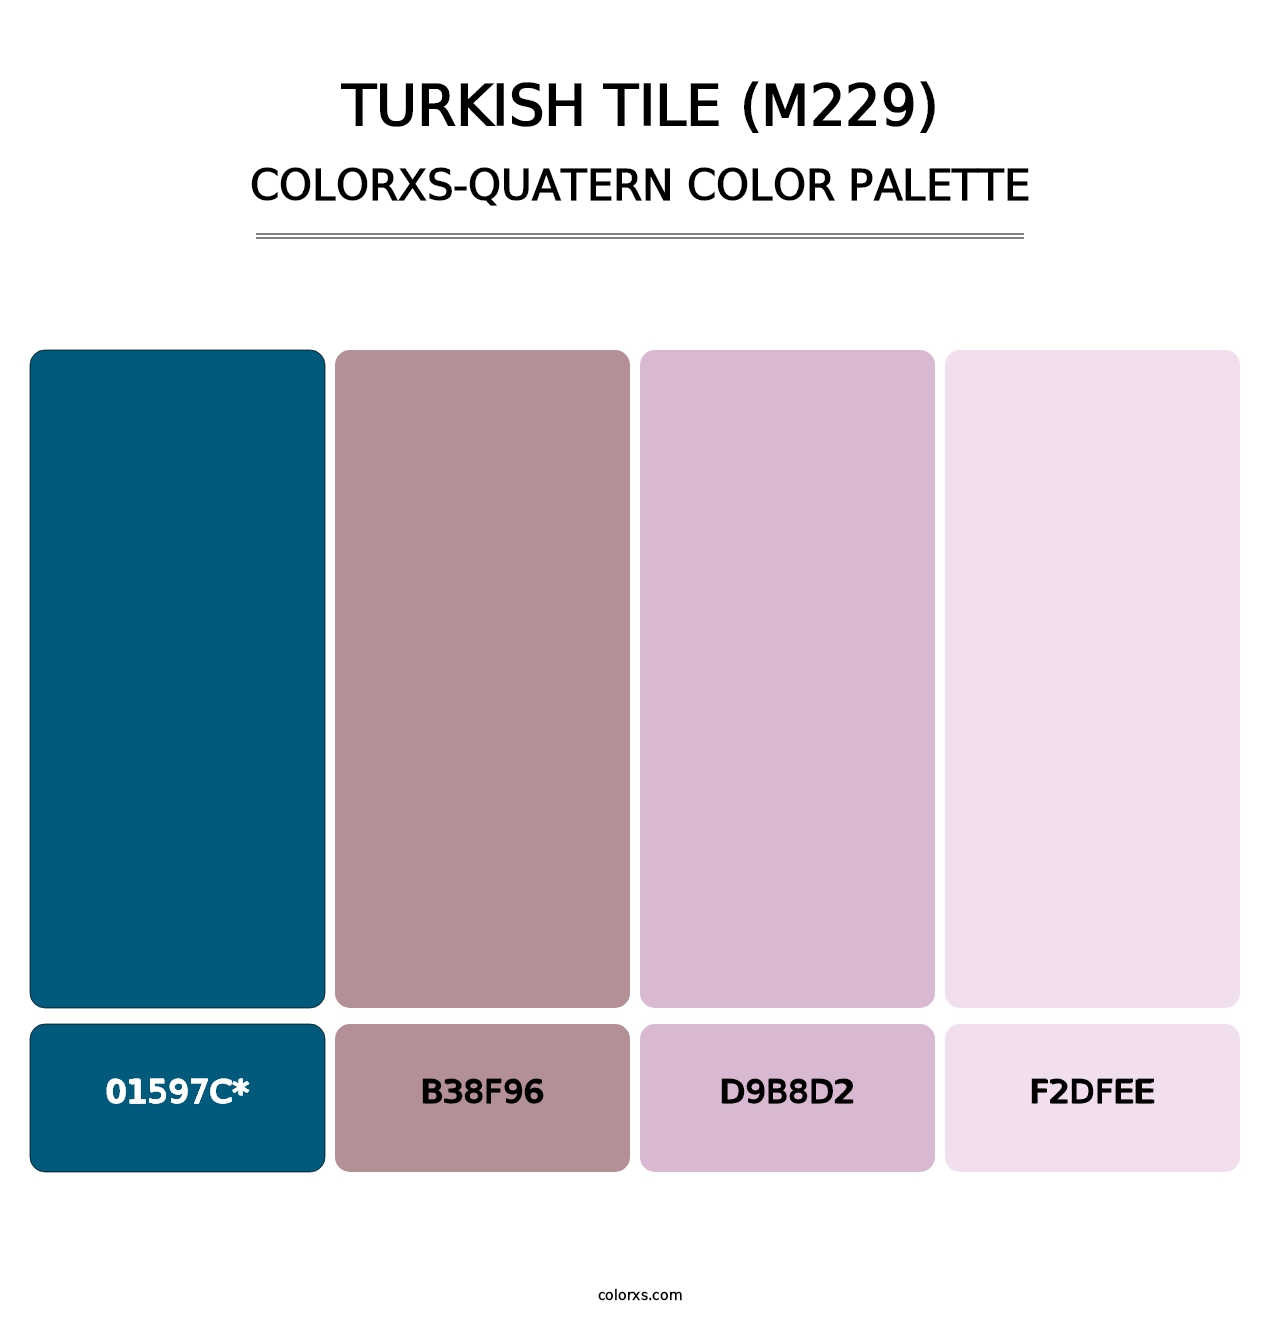 Turkish Tile (M229) - Colorxs Quatern Palette